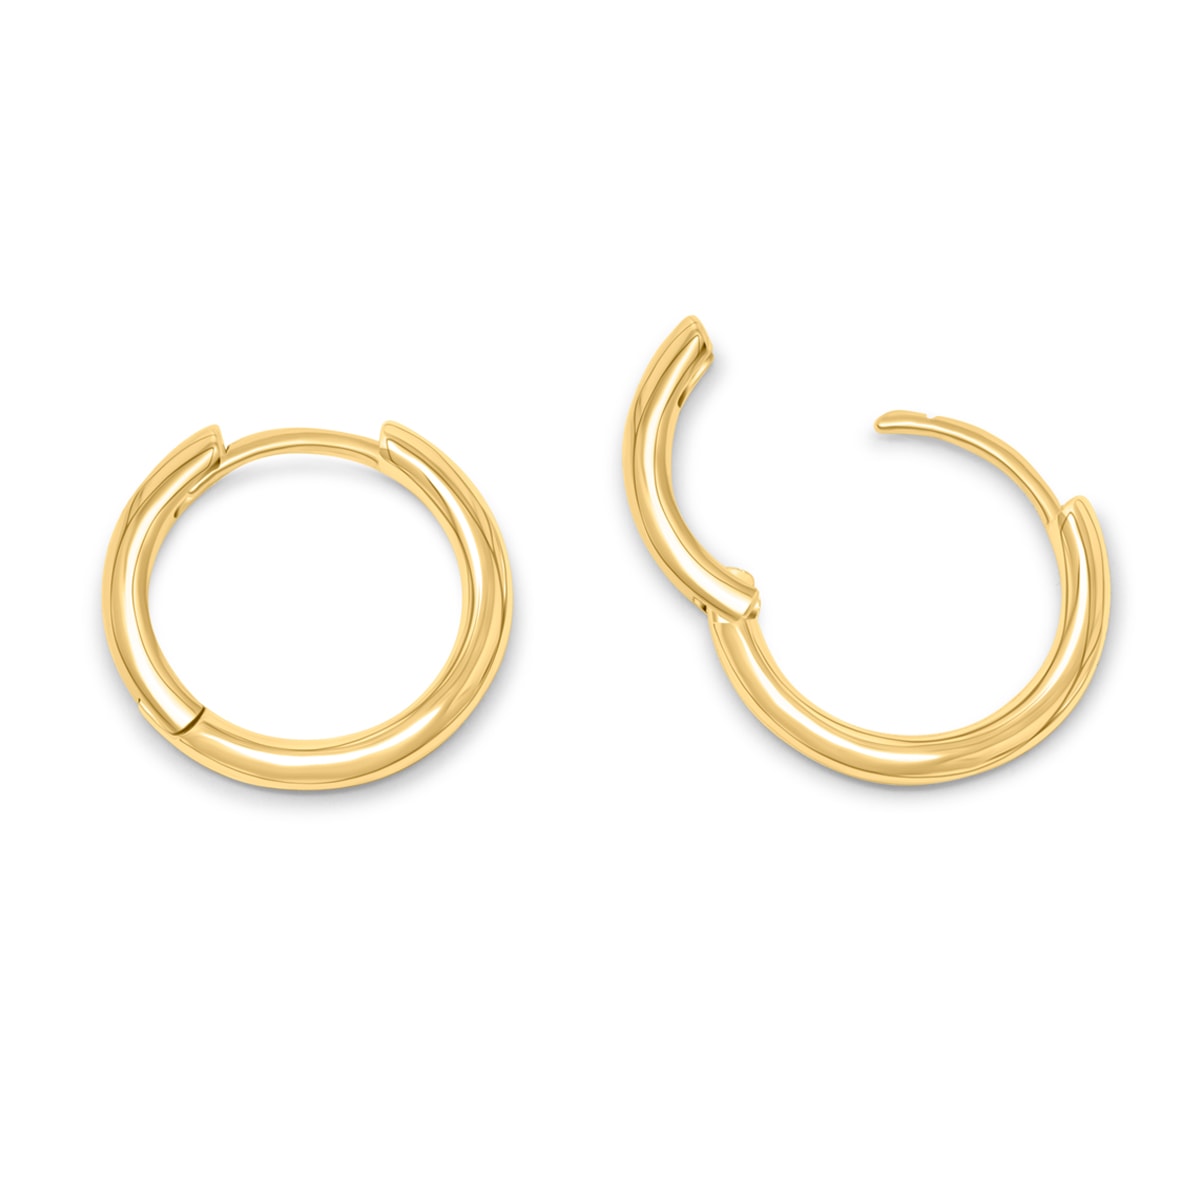 Affordable gold hoop earrings